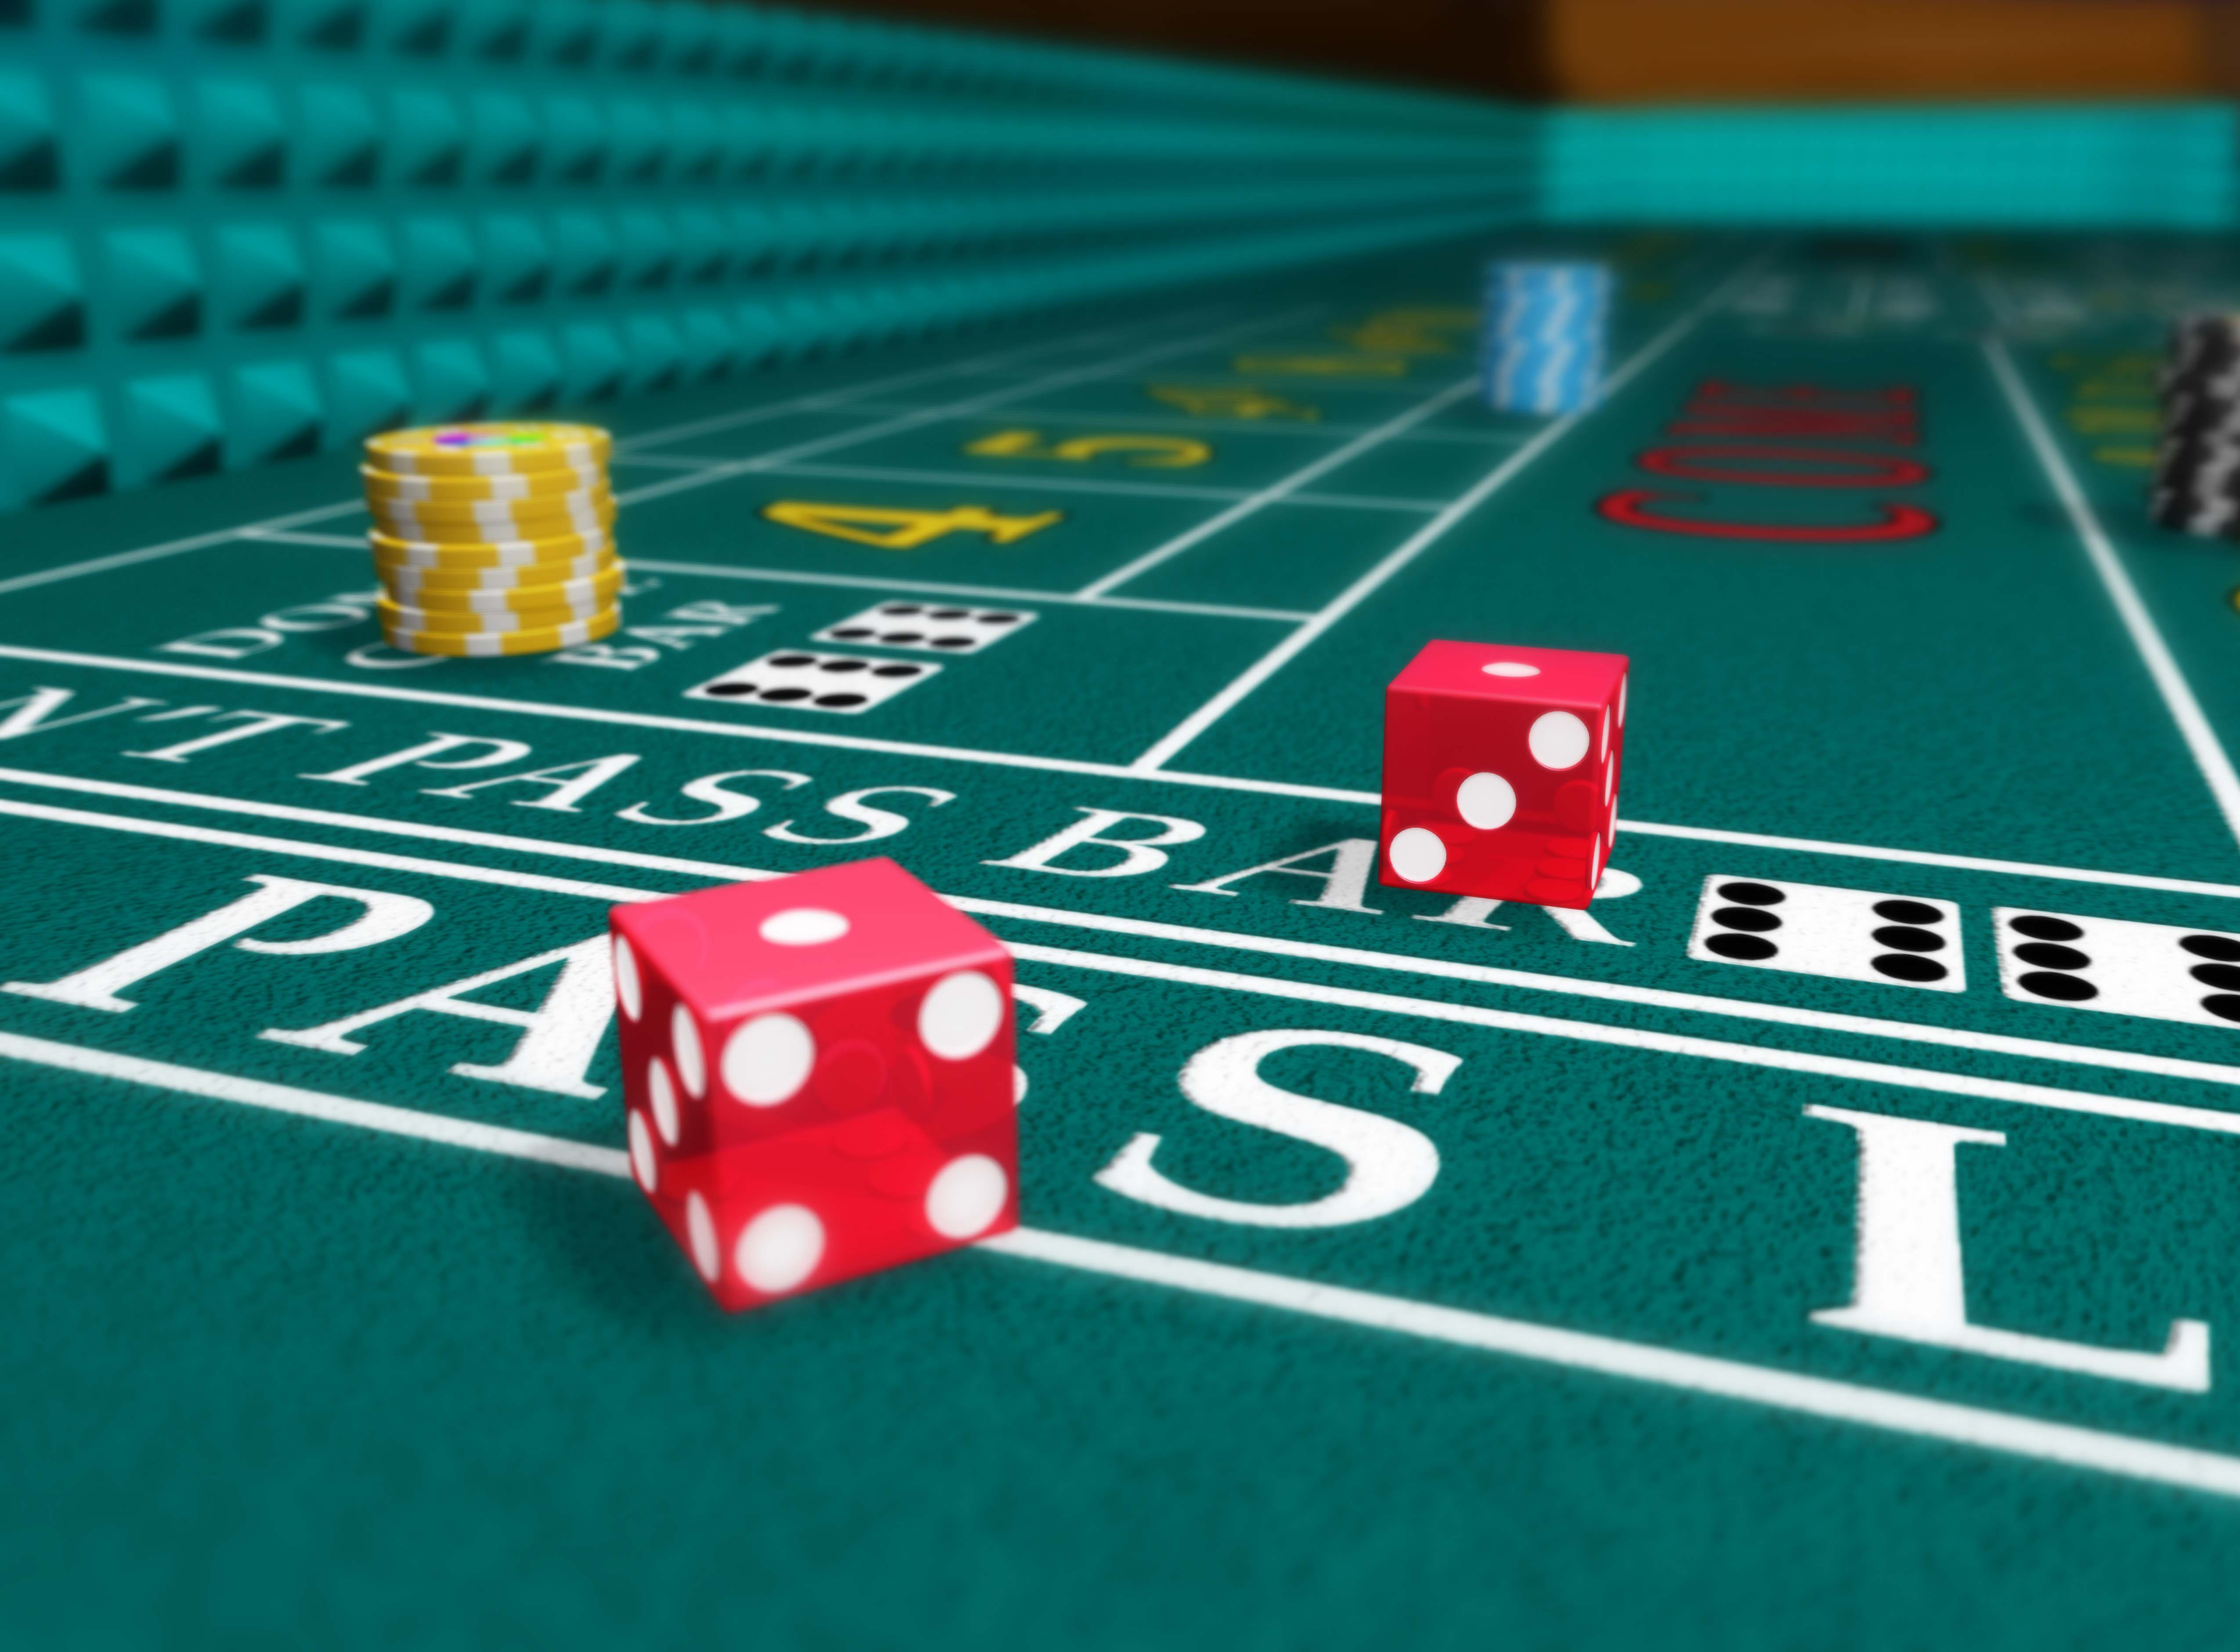 Jouer dans un casino en ligne avec des jetons virtuels